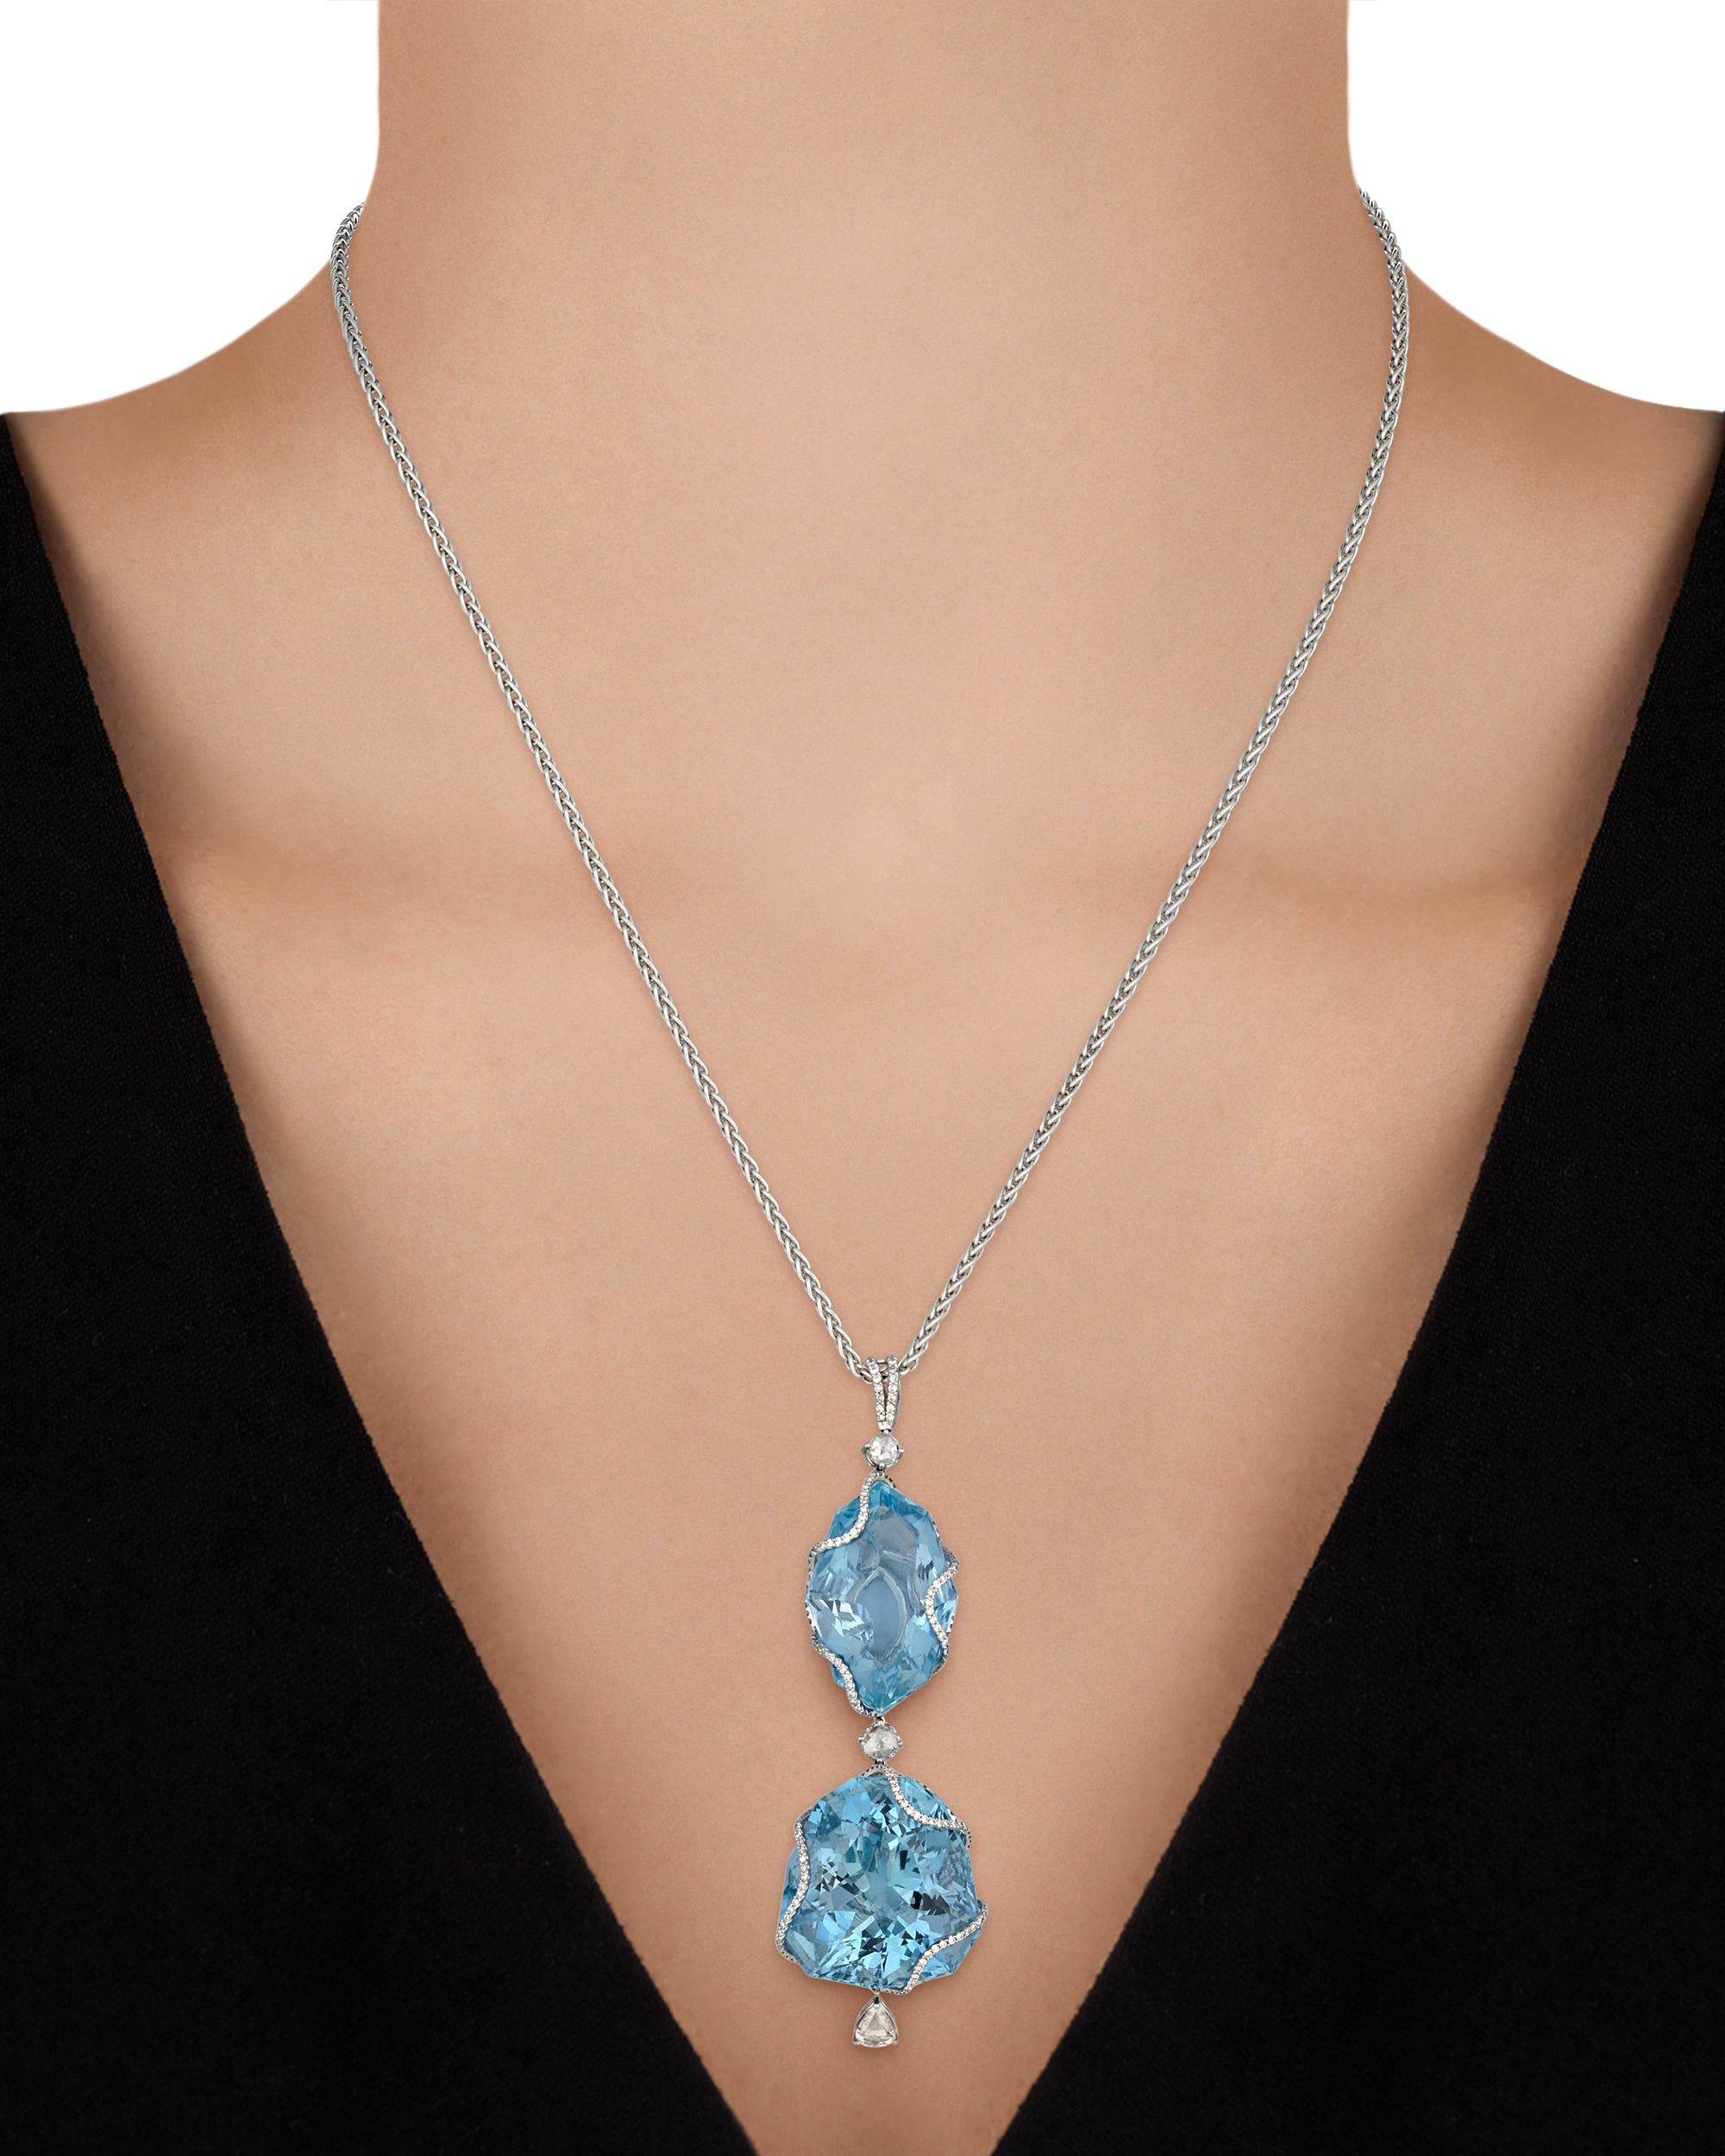 Contemporary Aquamarine Pendant Necklace, 101.73 Carat